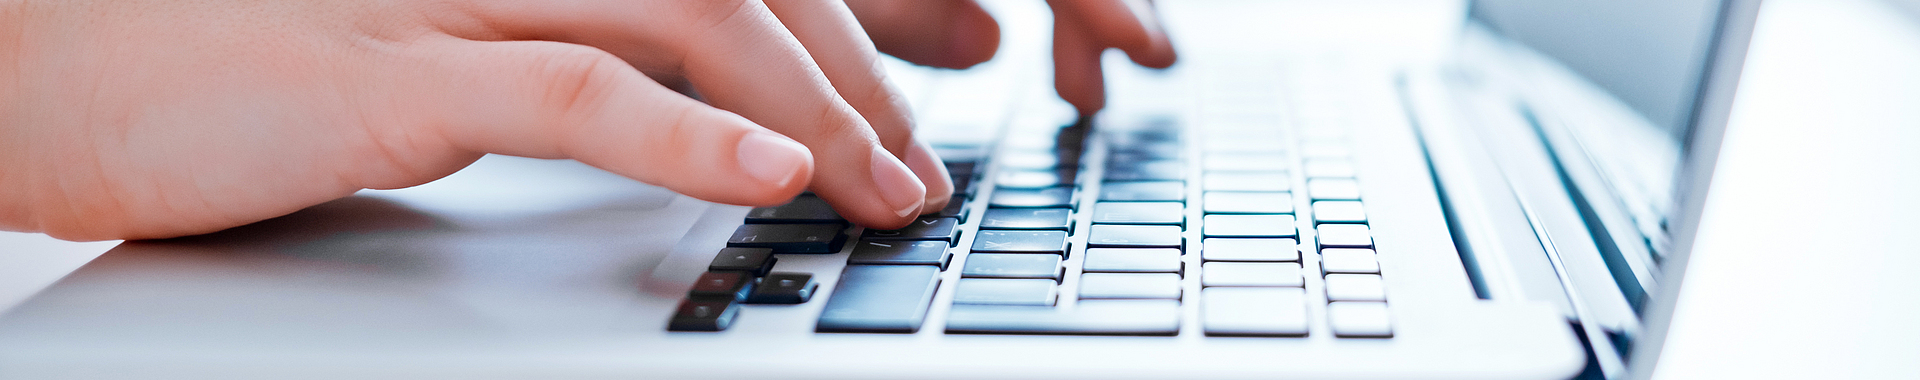 Zwei Hände tippen etwas auf einer Tastatur eines Laptops.